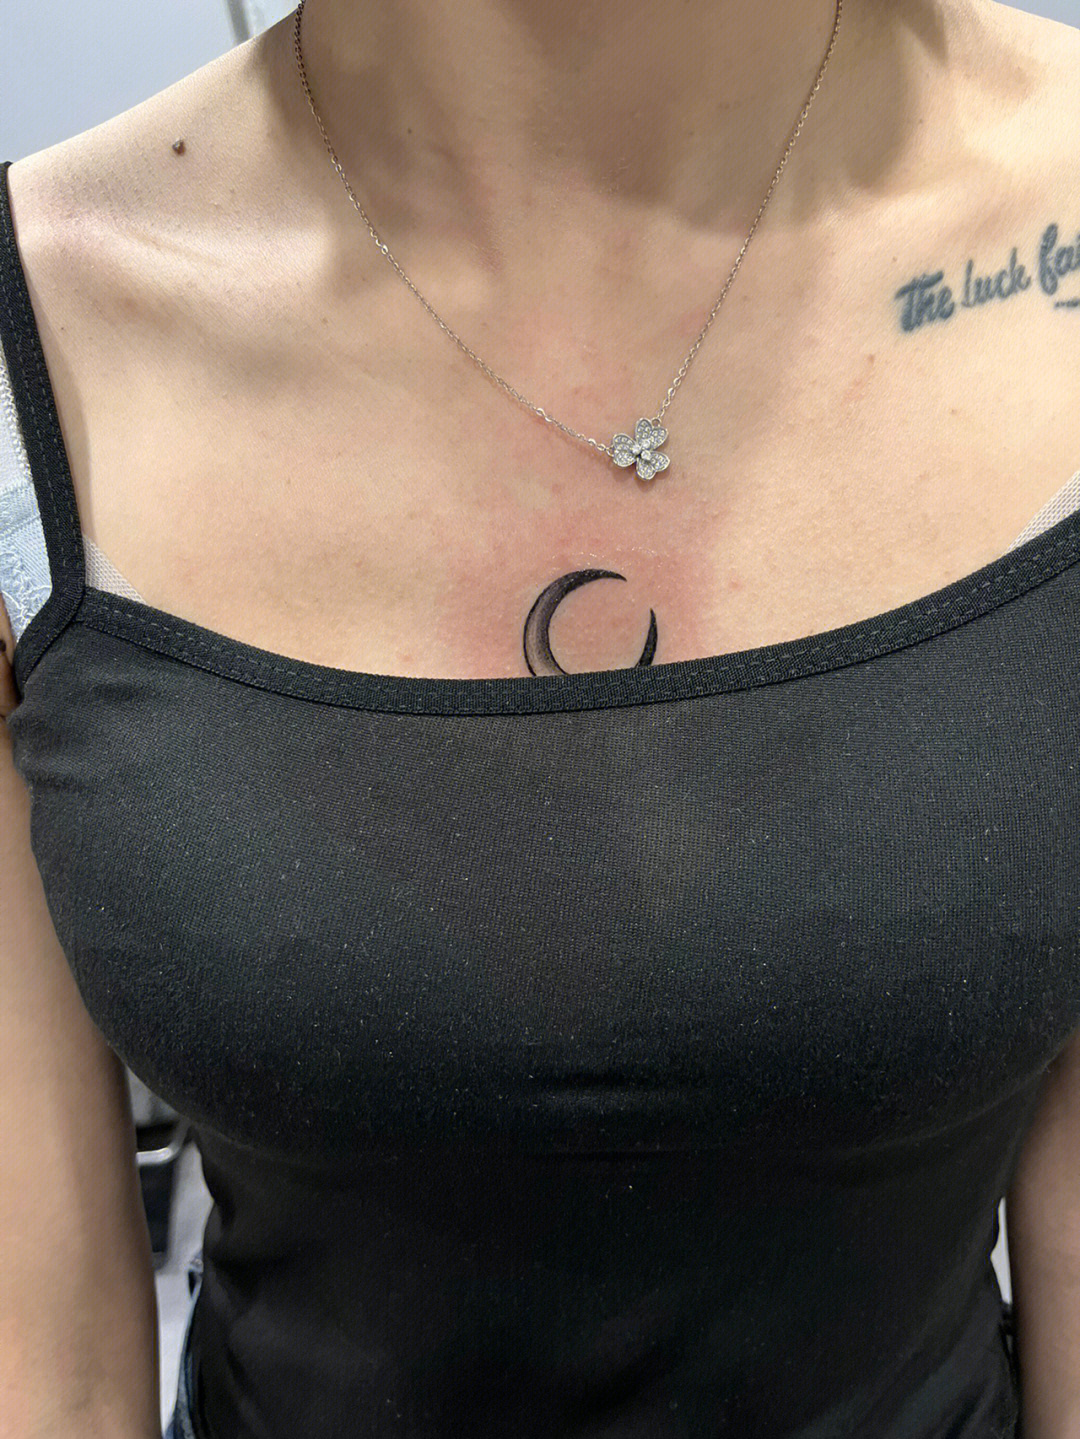 月亮纹身图案女胸图片